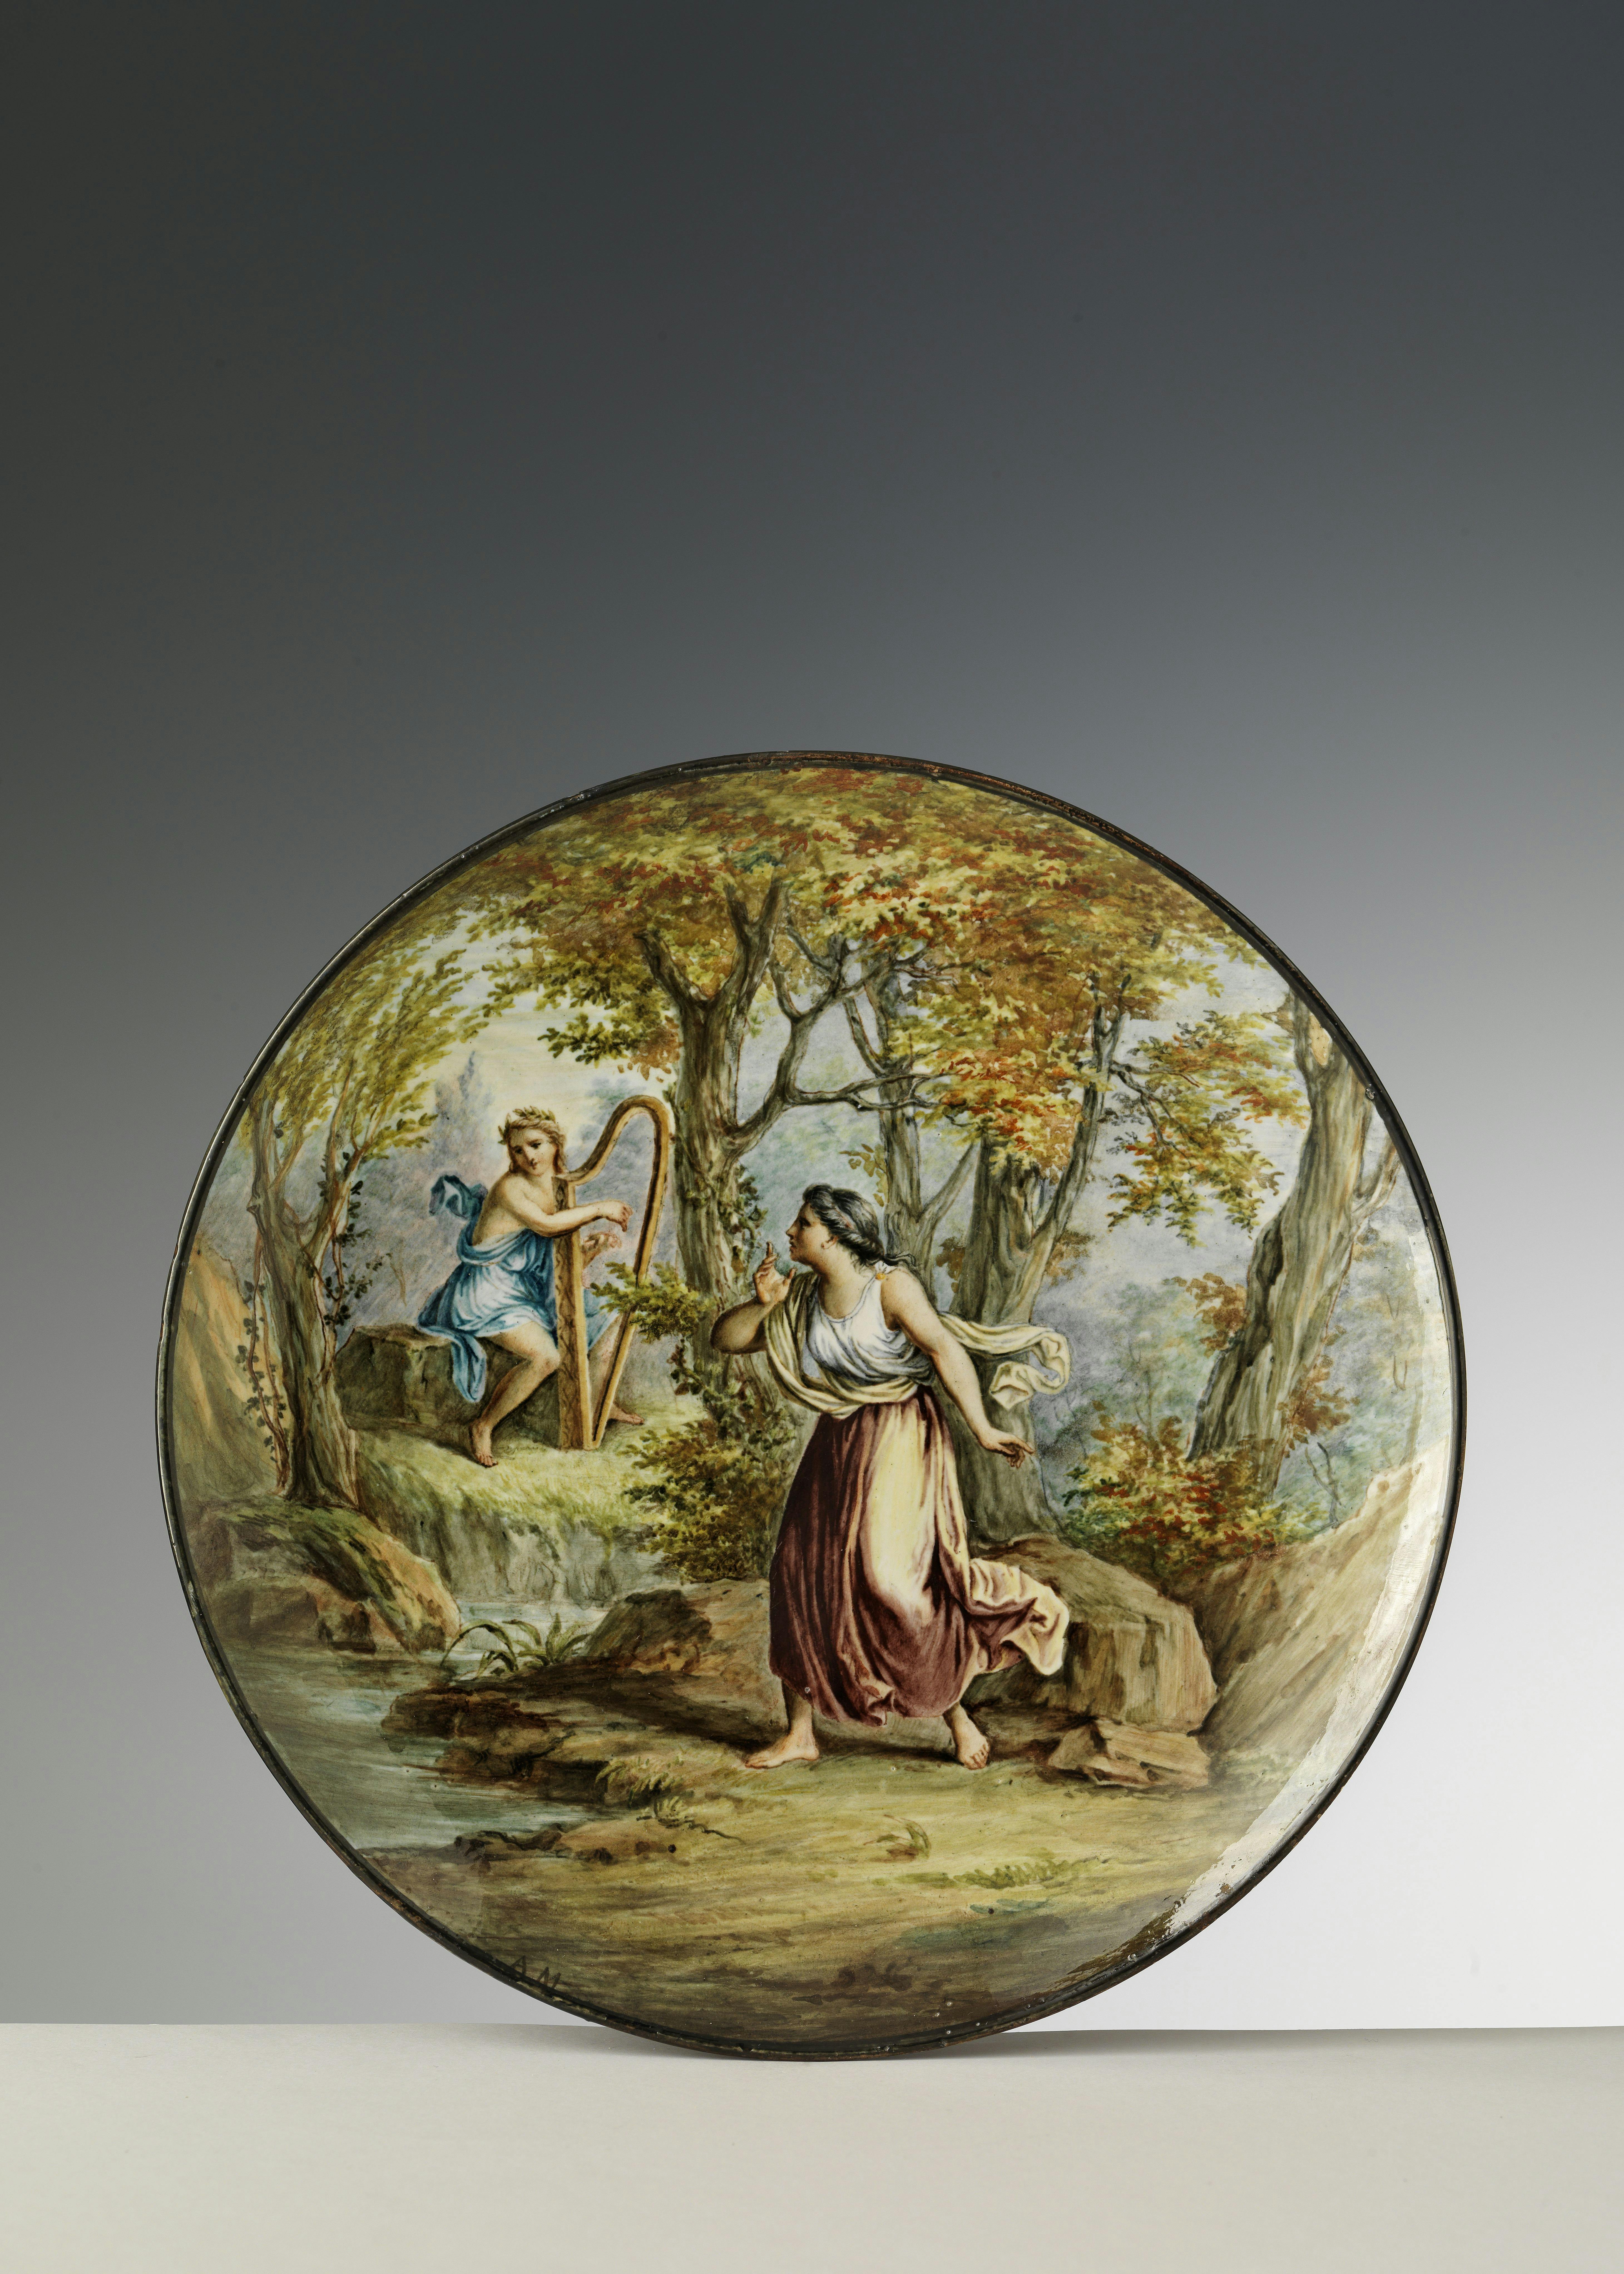 Piatto interamente decorato con un dipinto che raffigura Saffo e Apollo in un folto bosco